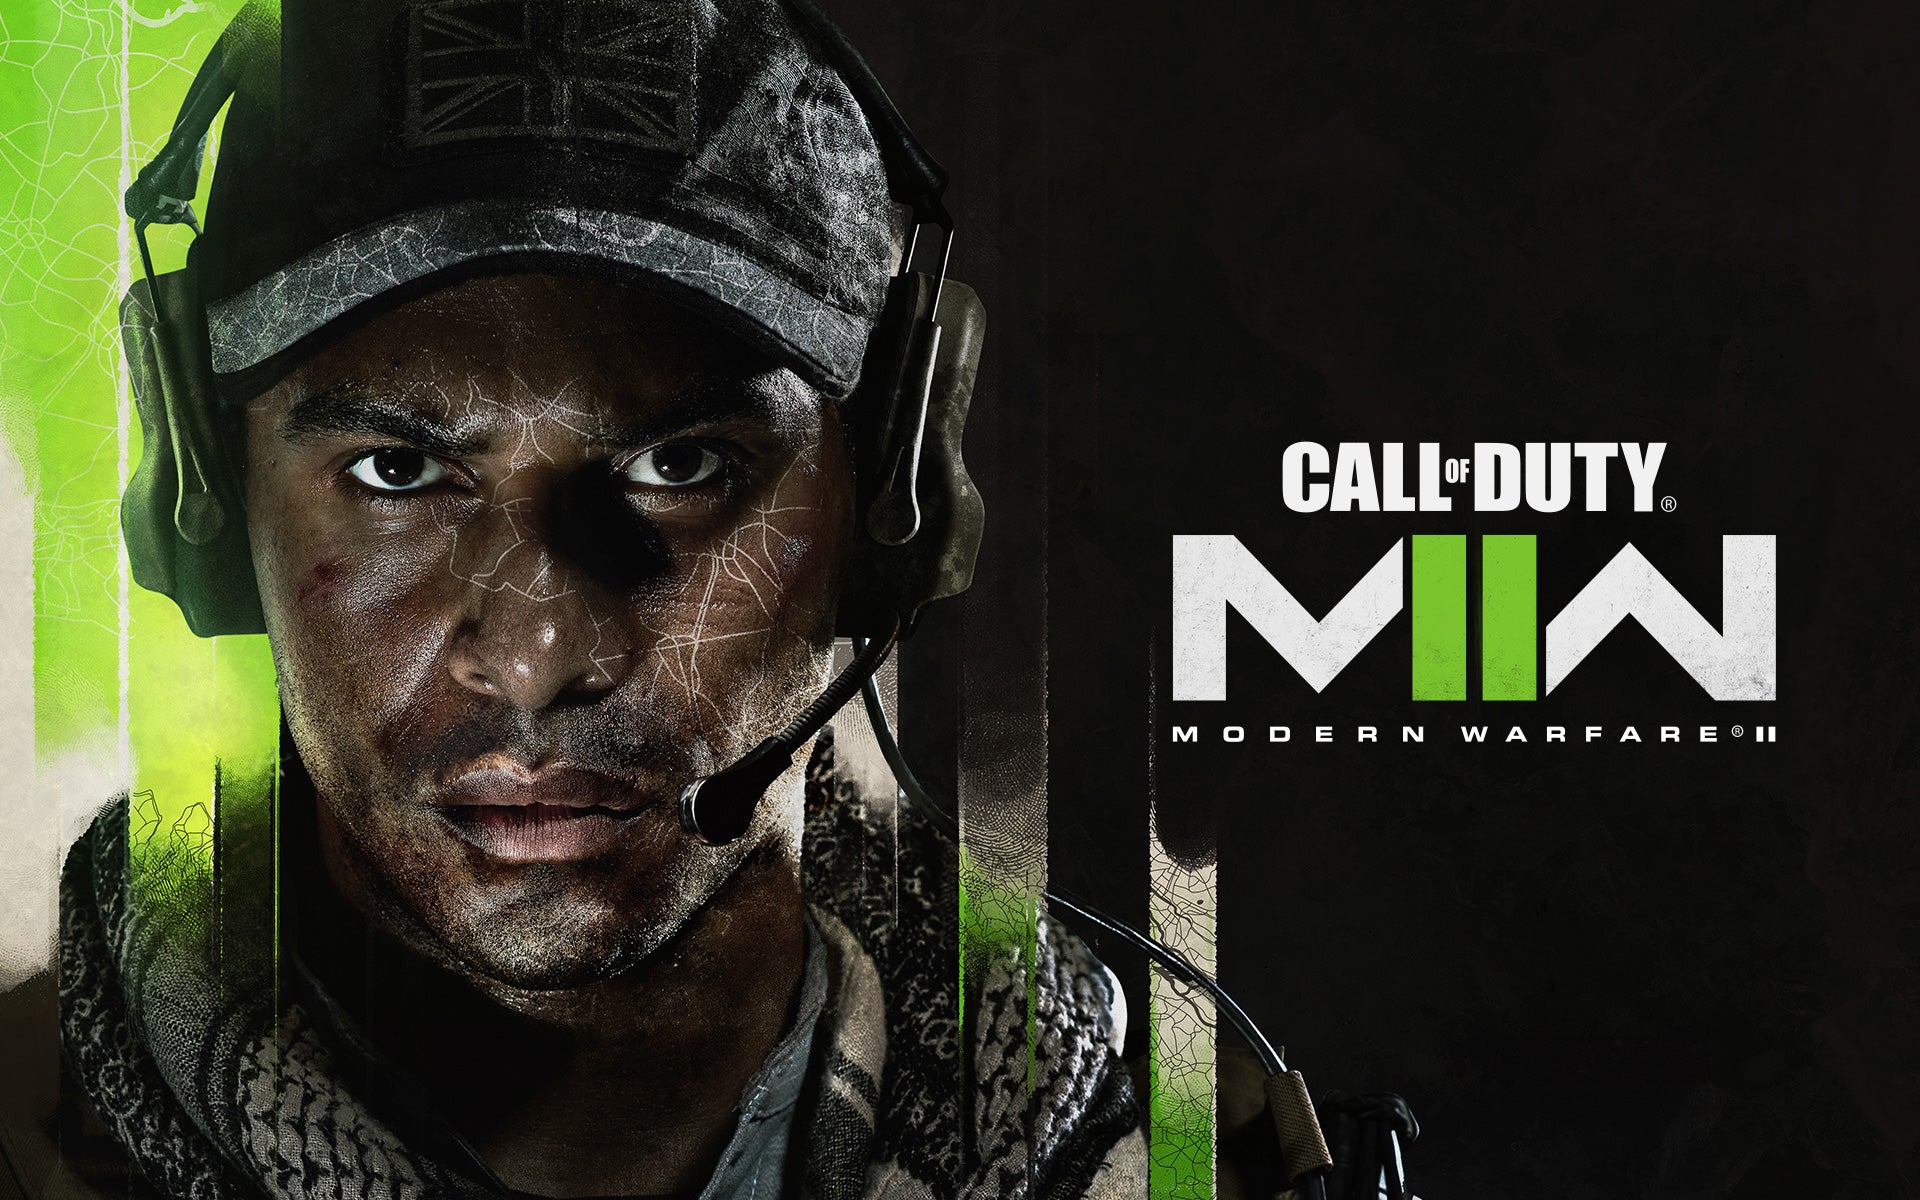 Modern Warfare 2 release date